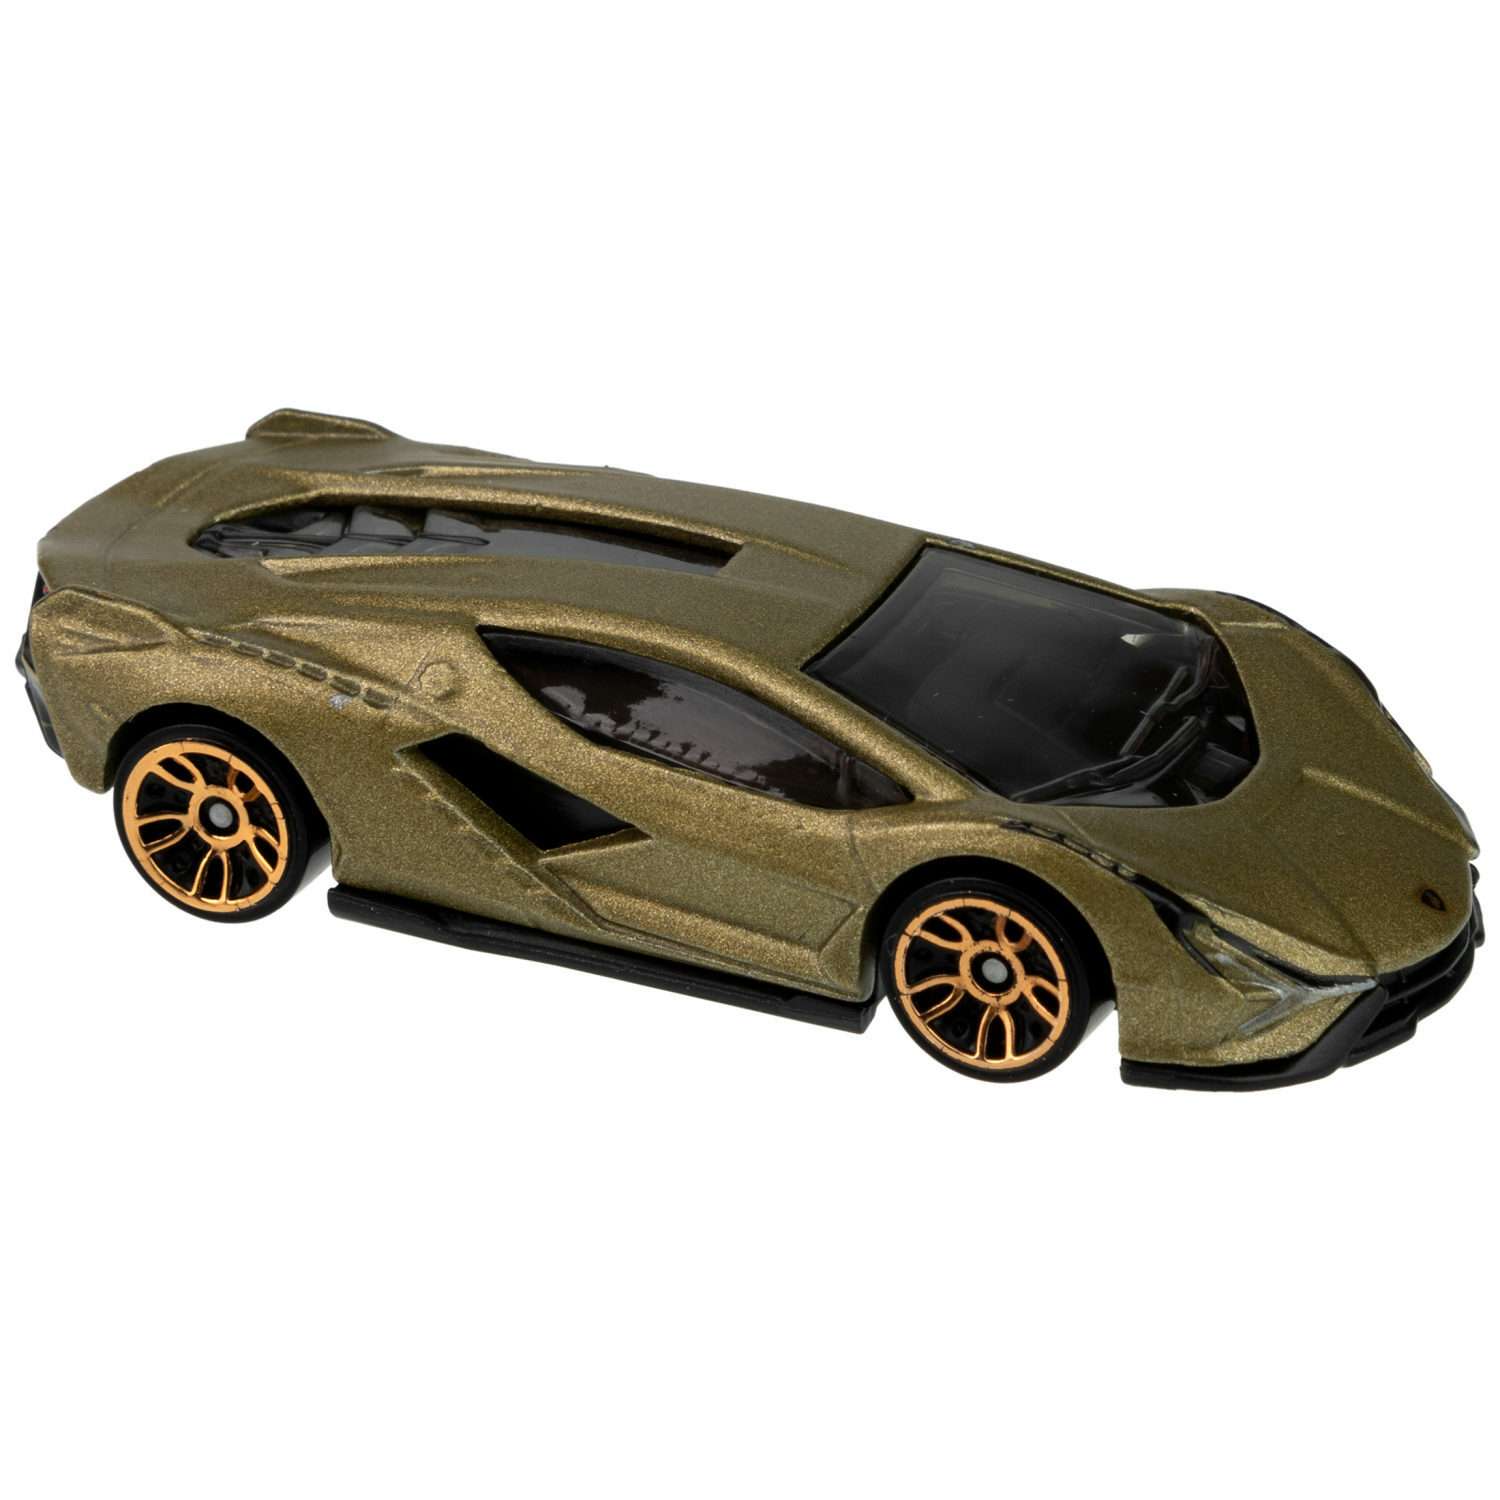 Коллекционная машинка Hot Wheels Lamborghini sian fkp 37 5785-146 - фото 2